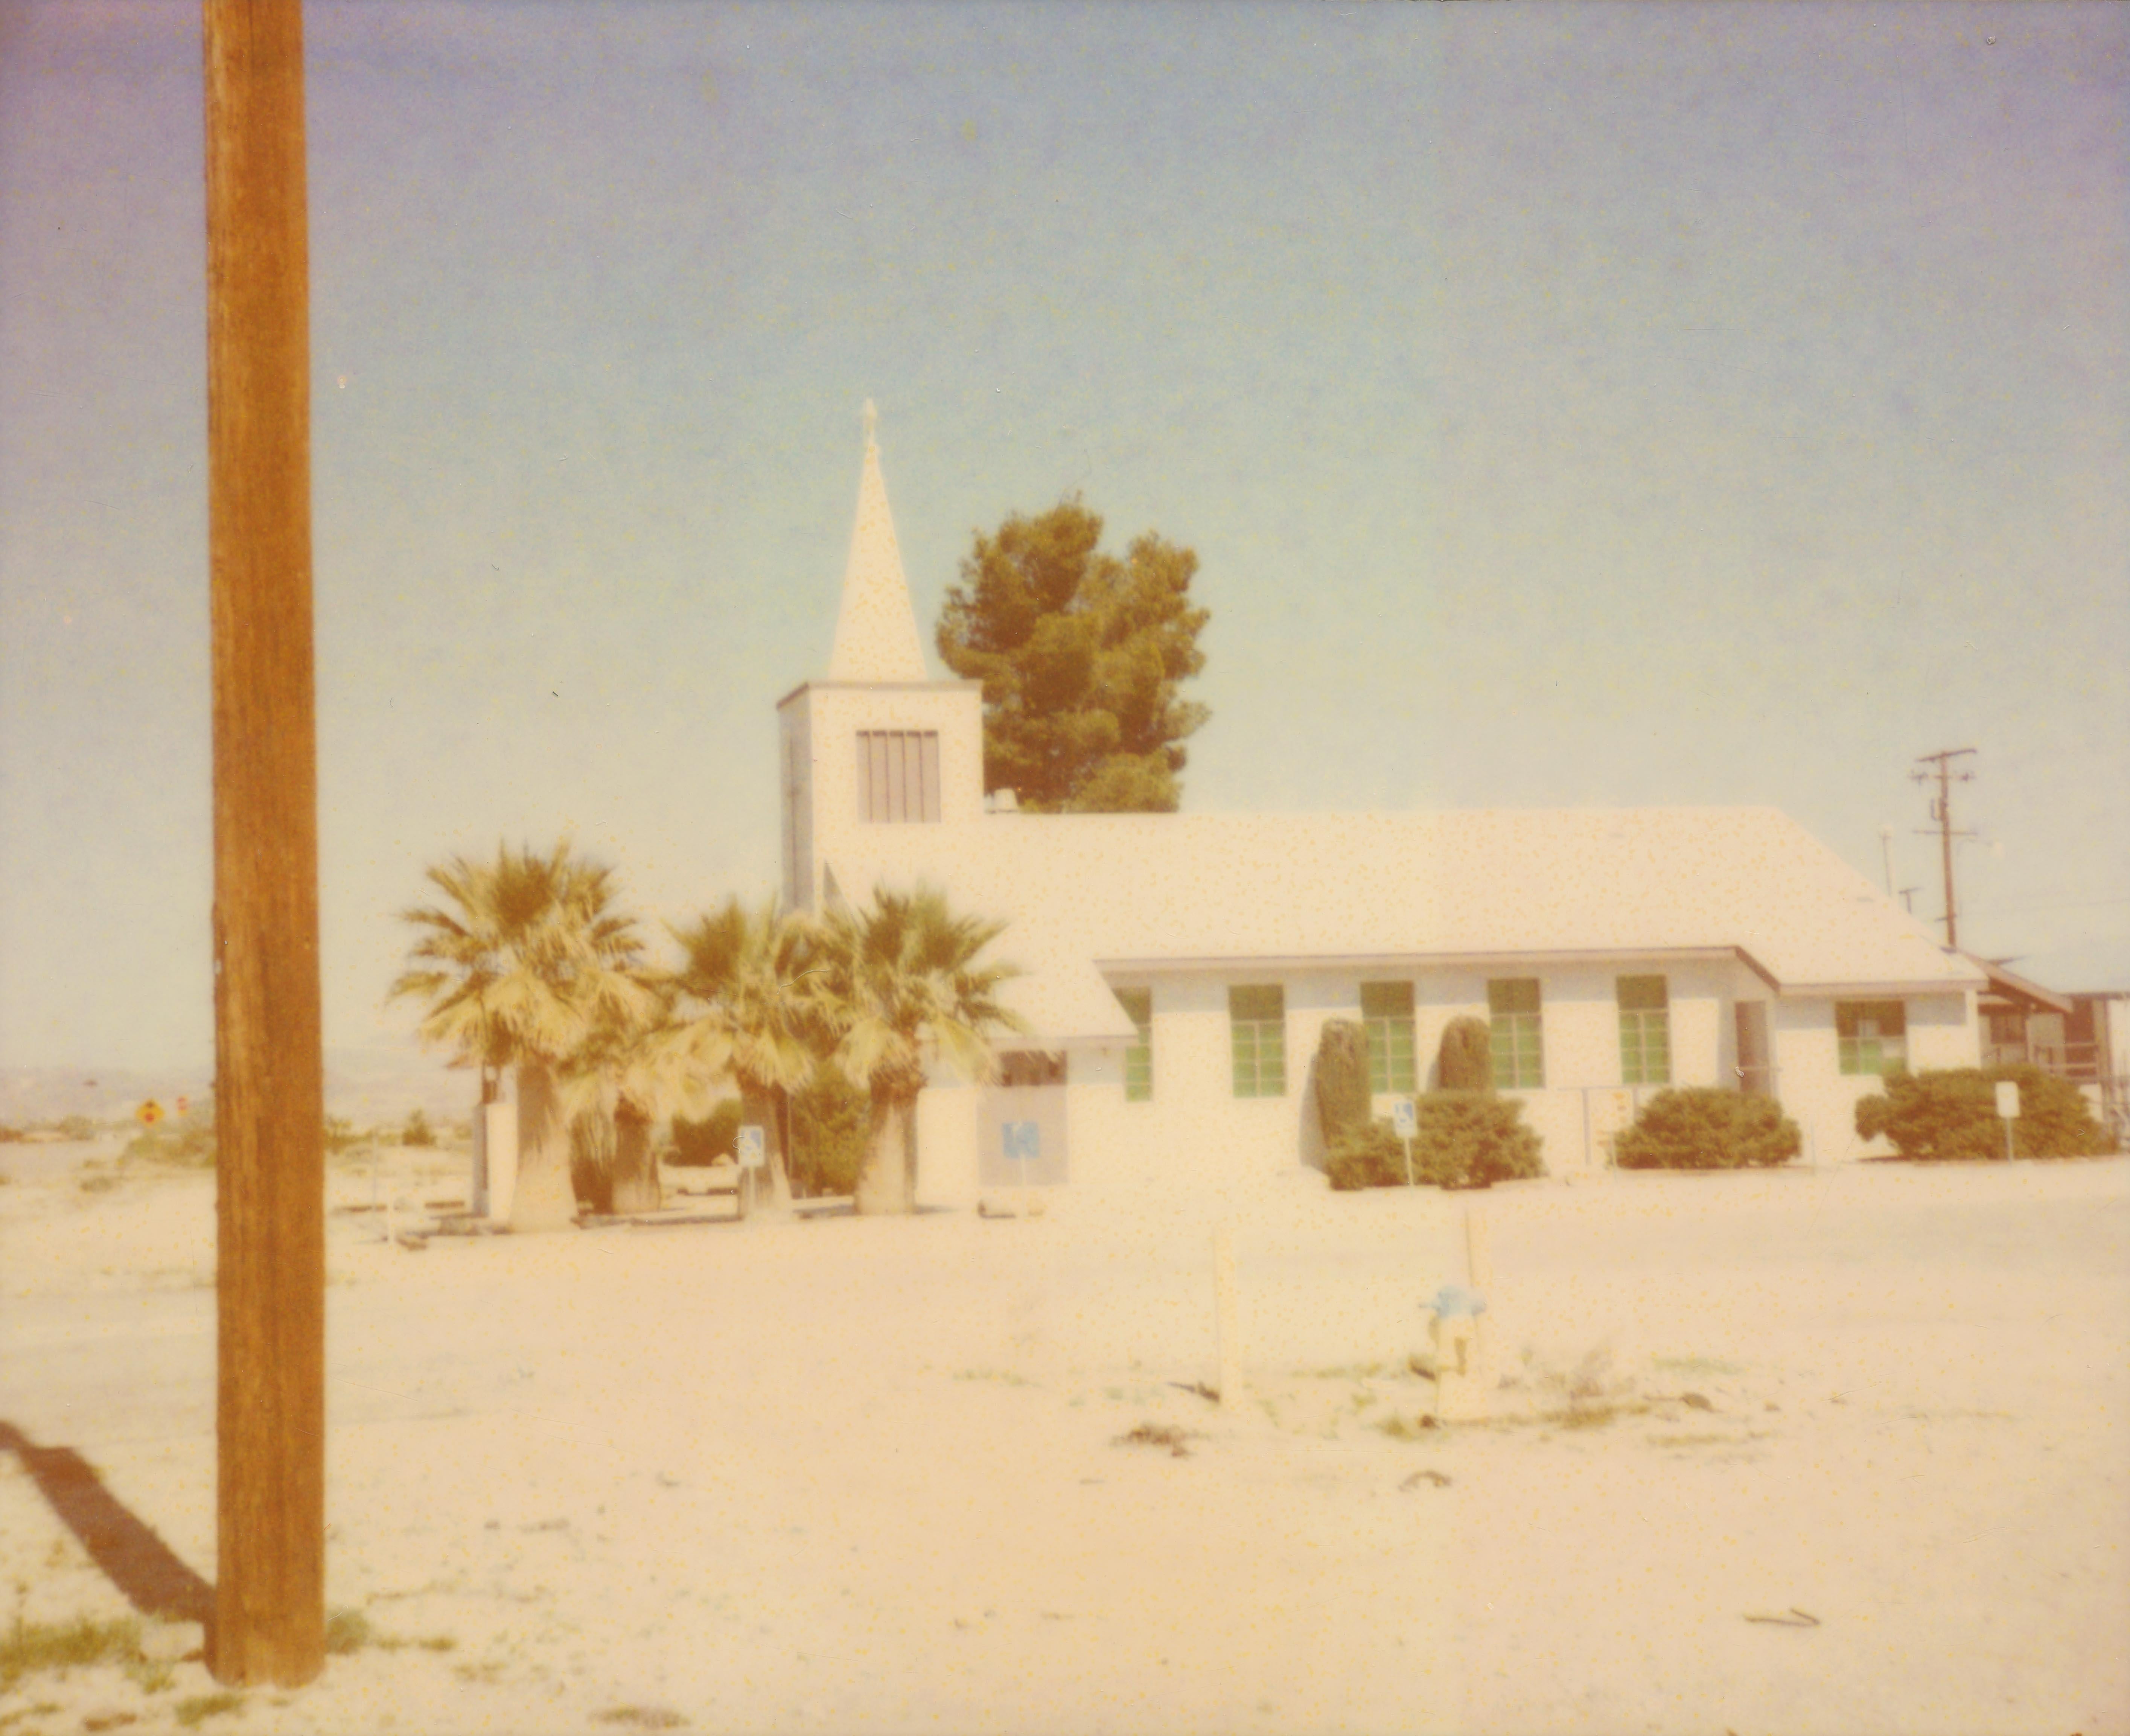 Sunday Church (Sidewinder) - 21st Century, Polaroid, Contemporary - Photograph by Stefanie Schneider